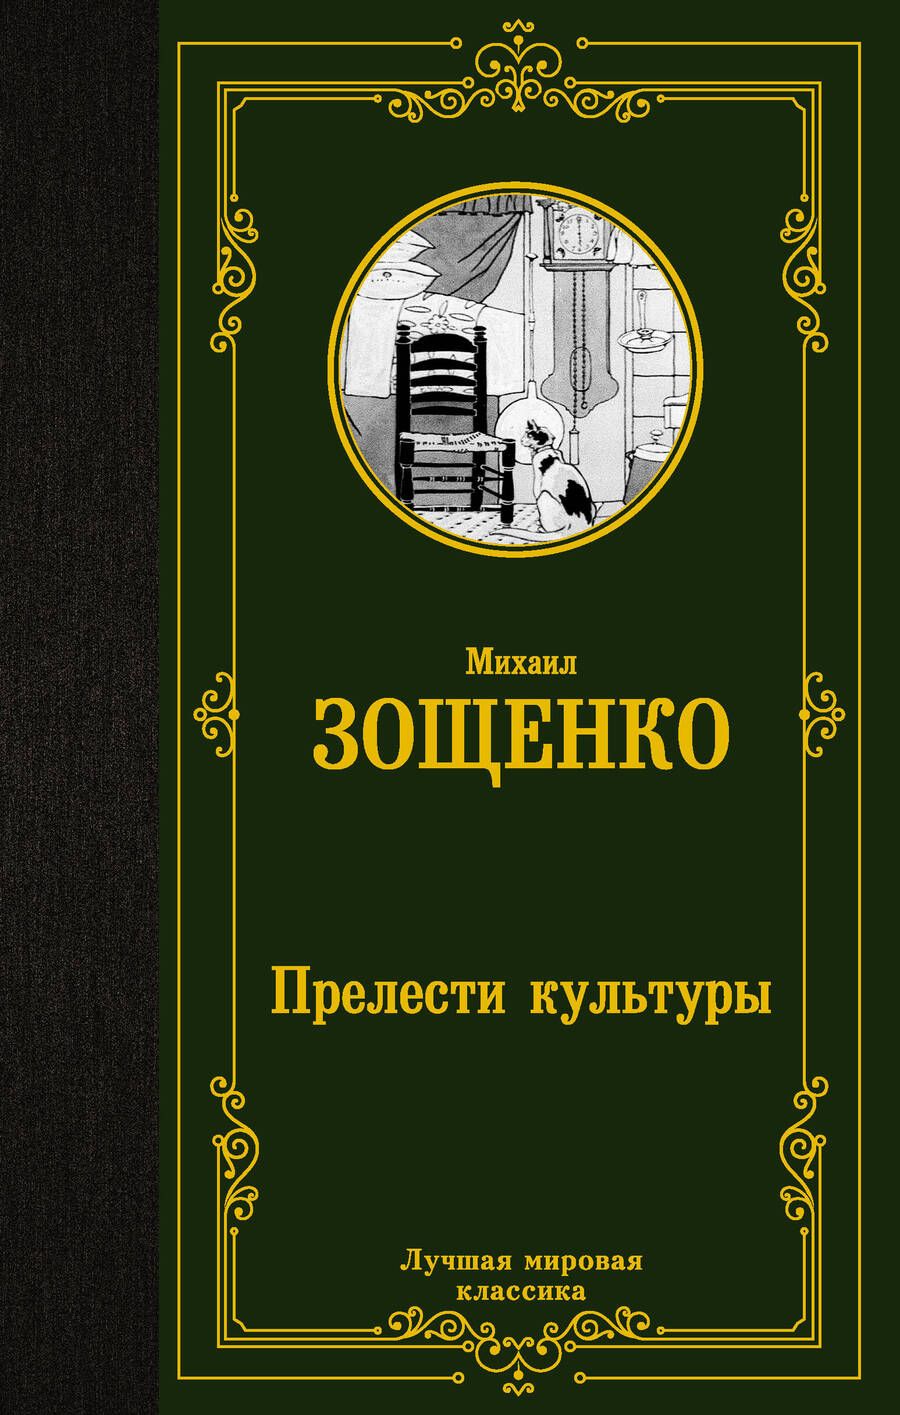 Обложка книги "Зощенко: Прелести культуры"